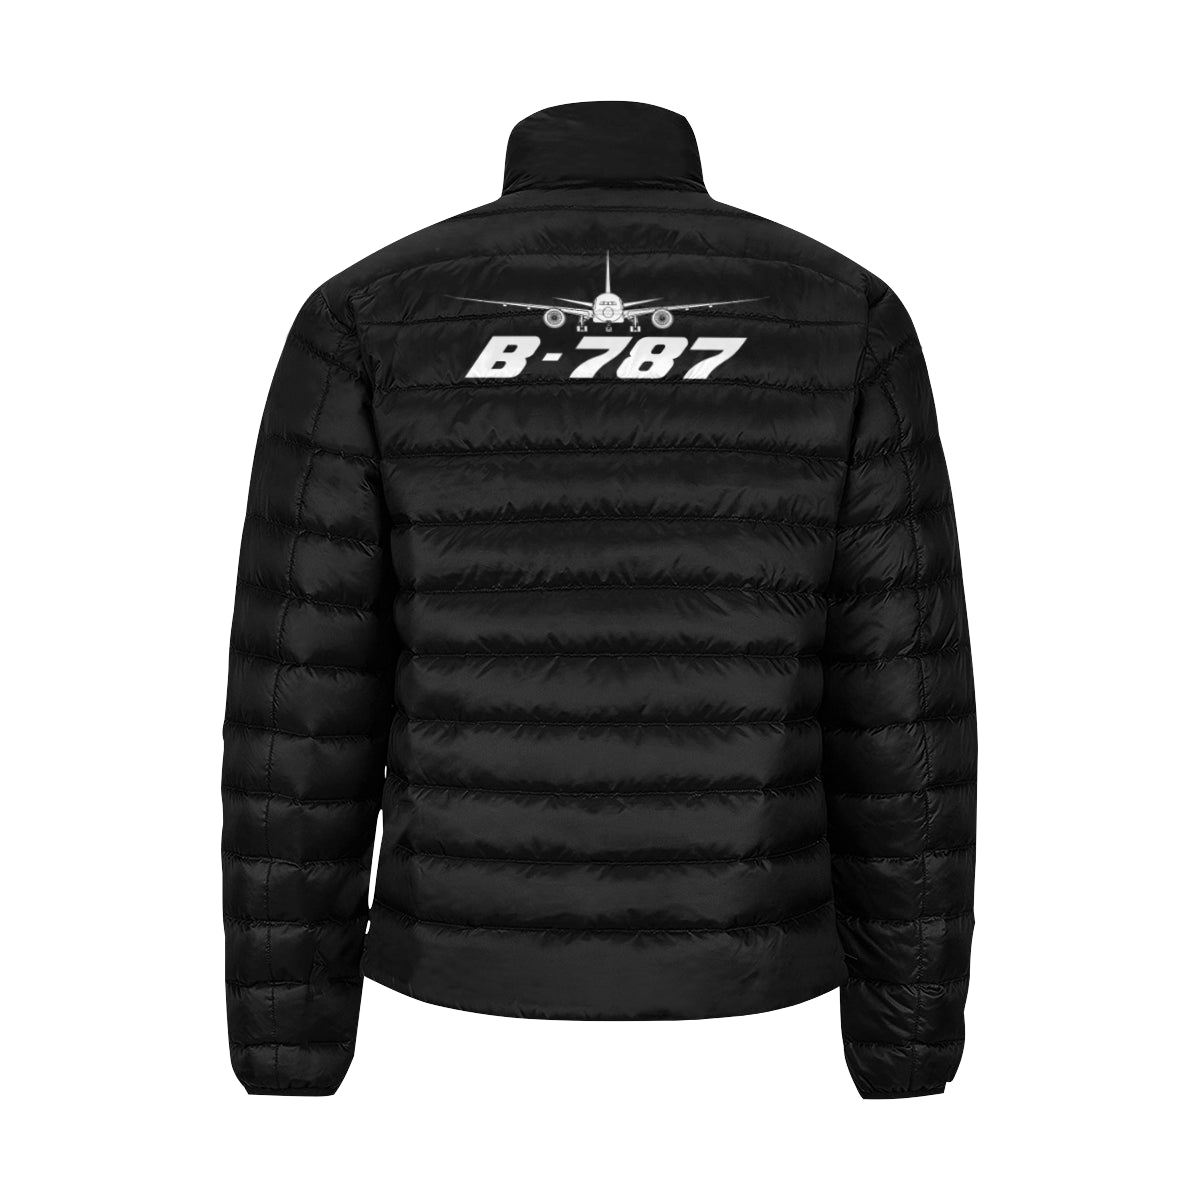 BOEING -787 Men's Stand Collar Padded Jacket e-joyer